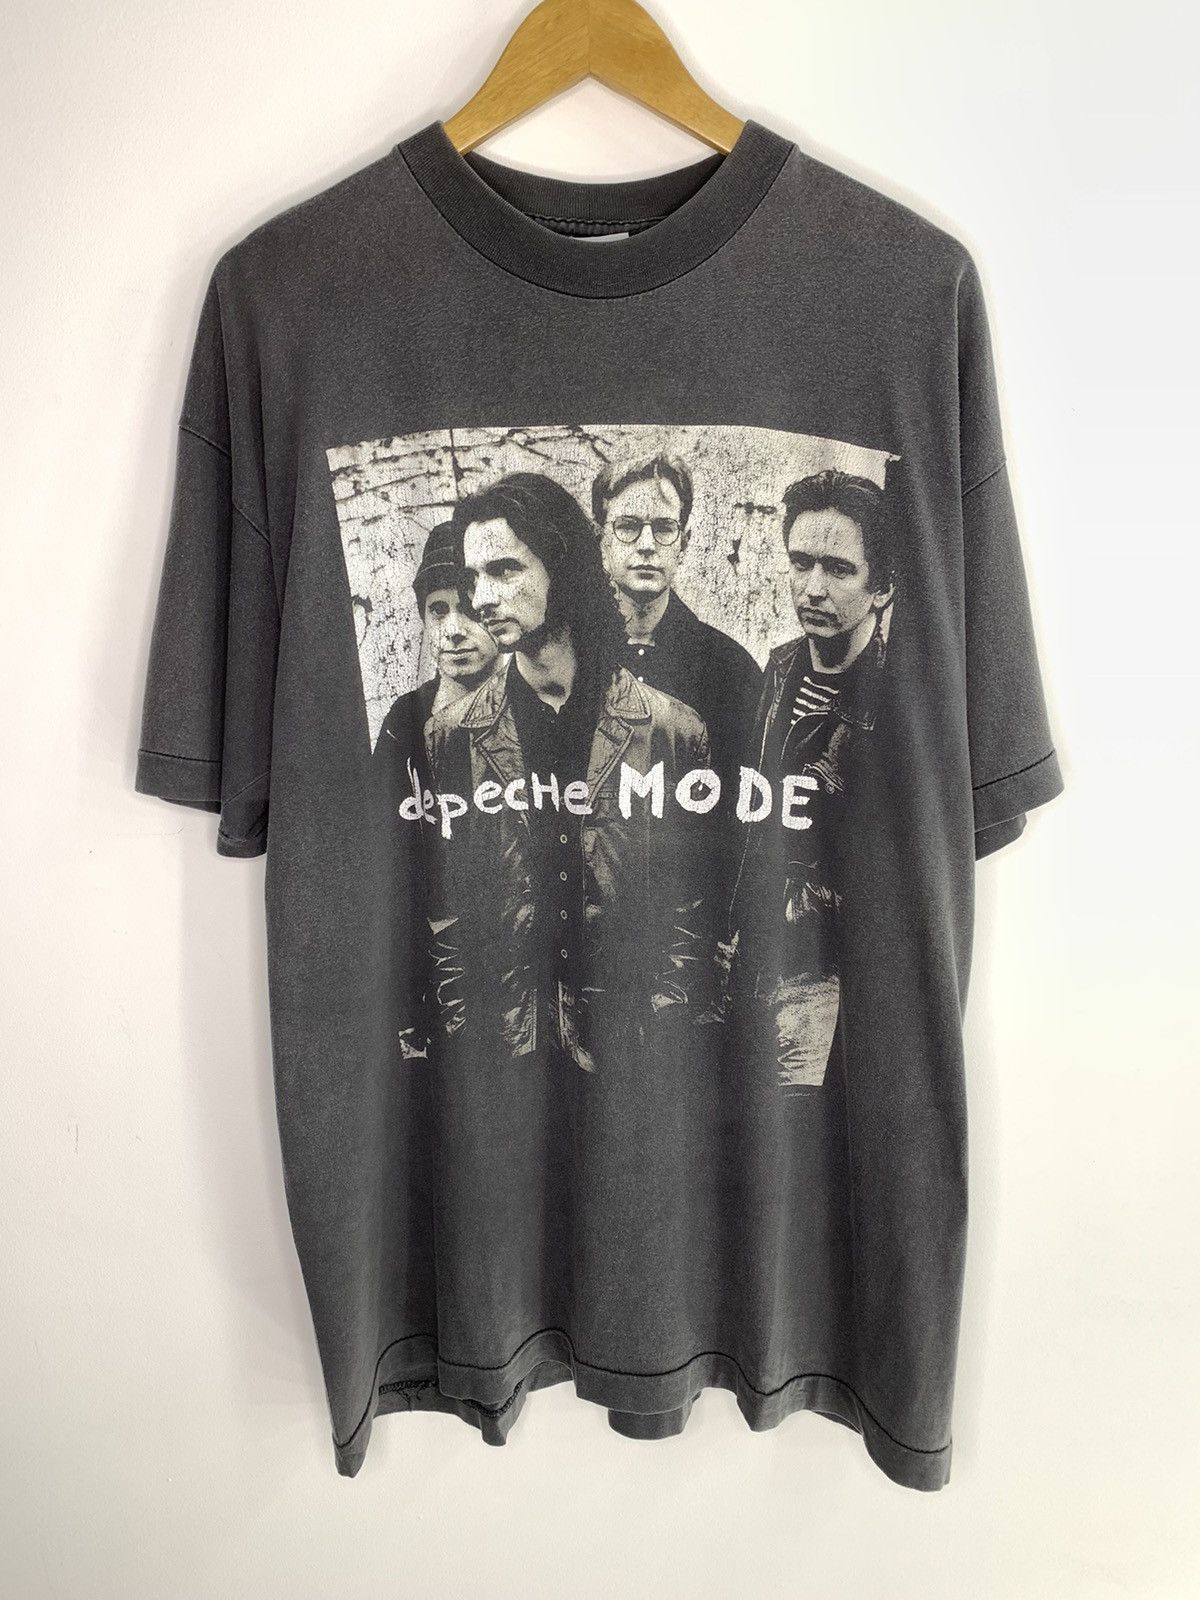 Vintage Depeche Mode Devotional Tour 1993 T-Shirt XL Size Size US XL / EU 56 / 4 - 2 Preview